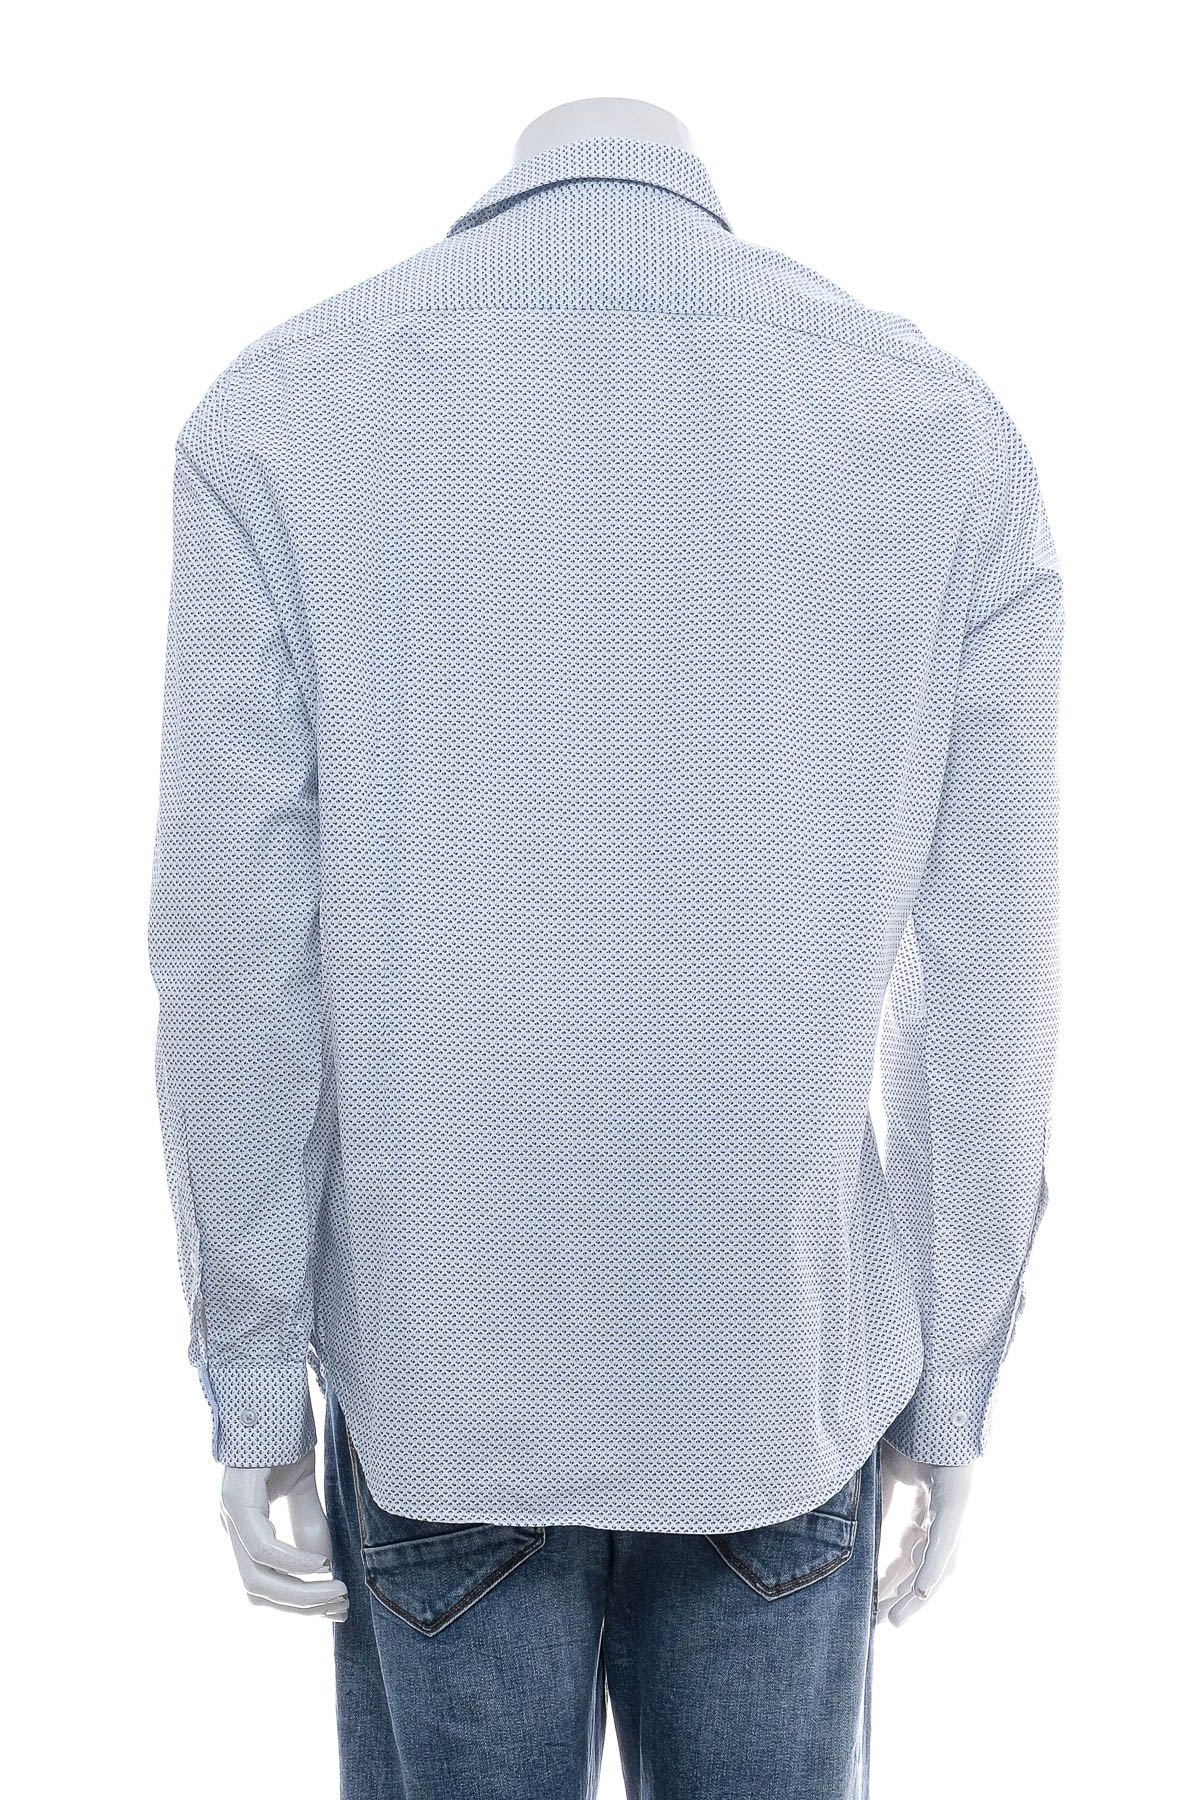 Ανδρικό πουκάμισο - Paul Hunter - 1